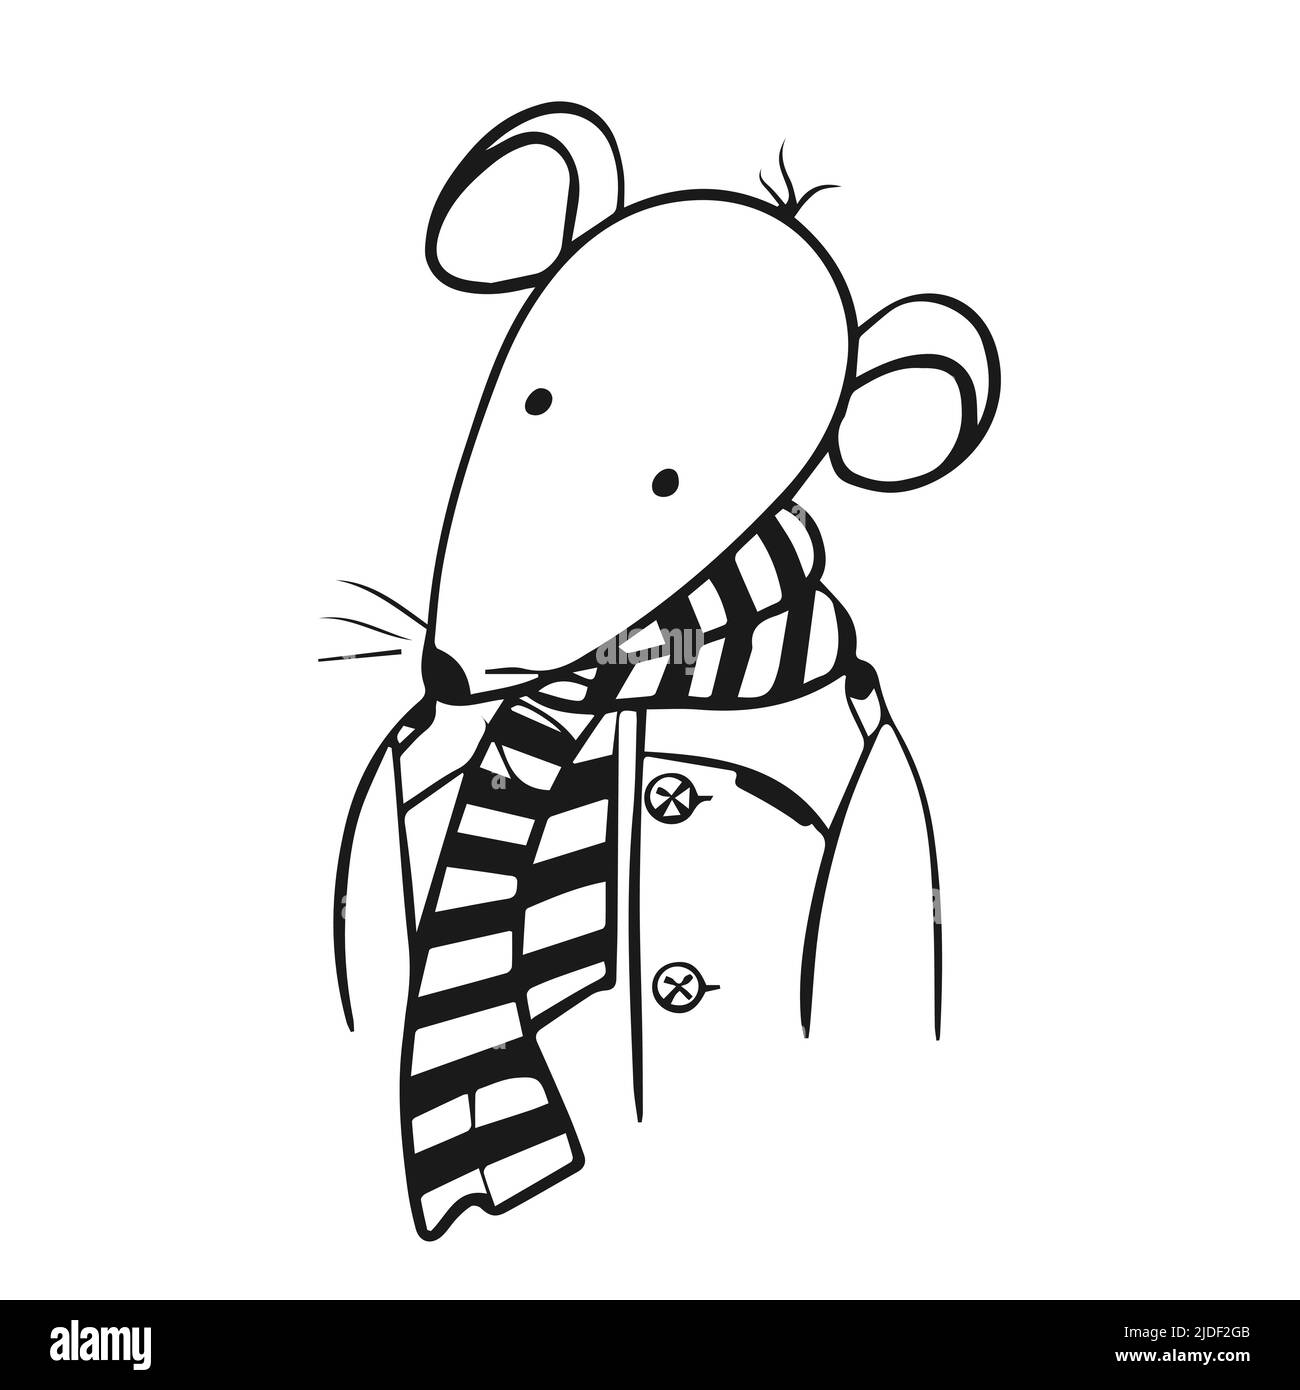 Vektor handgezeichnete Illustration einer niedlichen Maus in Kleidung. Doodle. Stock Vektor